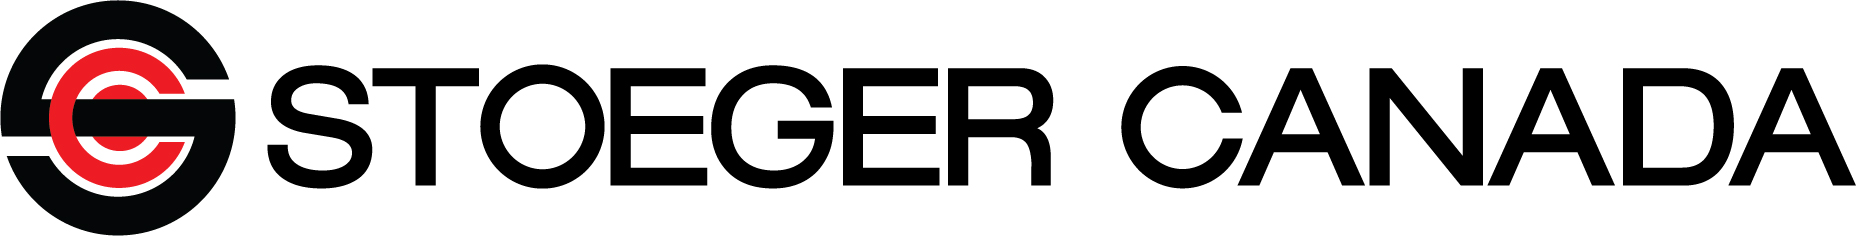 Stoeger Canada New Logo - horizontal